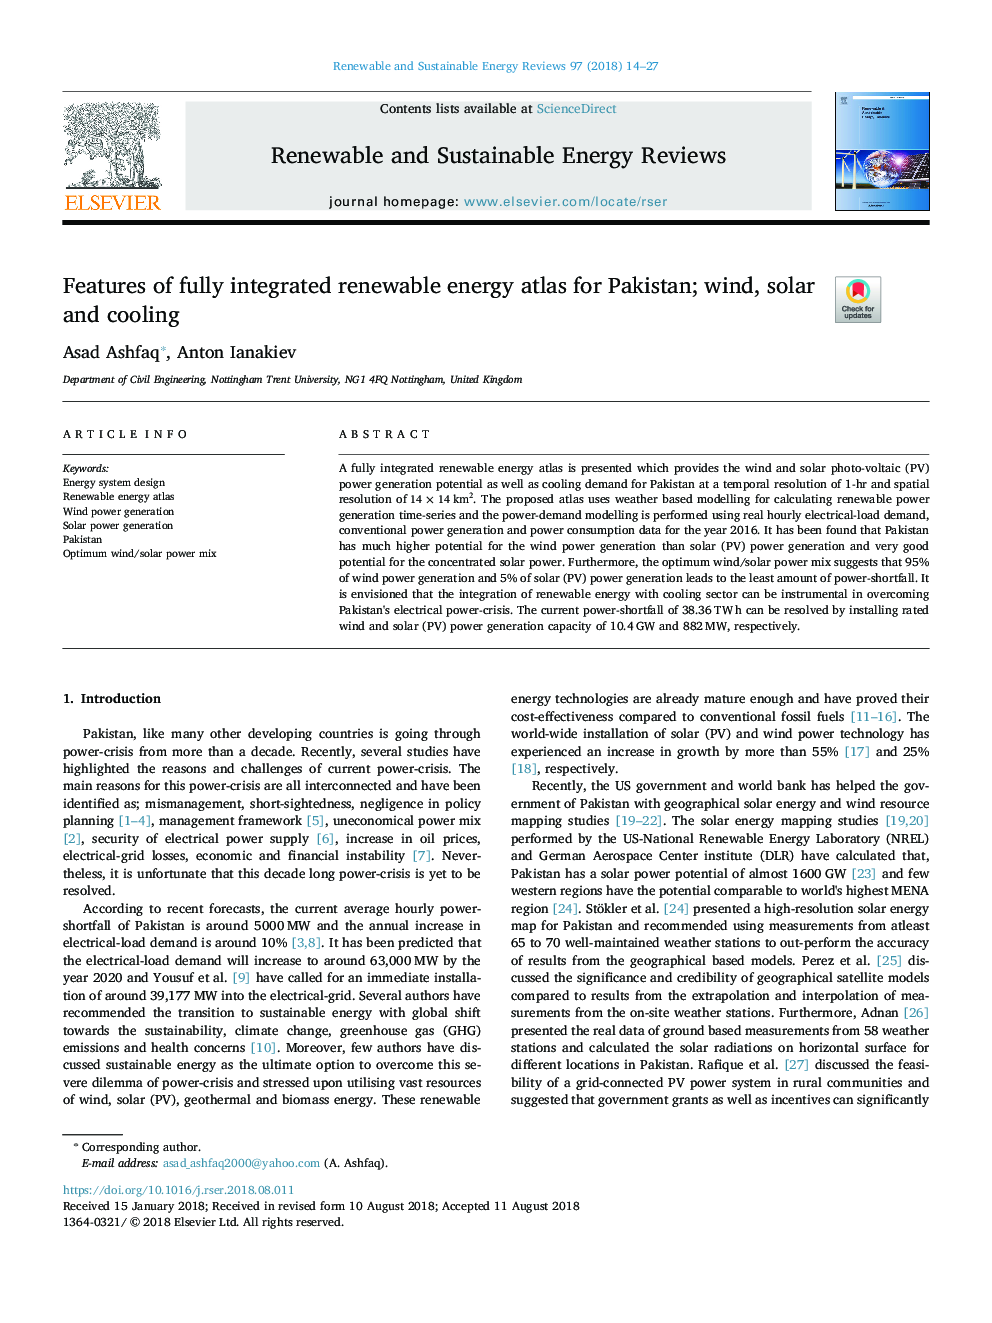 ویژگی های اطلس کامل انرژی مجتمع تجدید پذیر برای پاکستان؛ باد، خورشید و خنک کننده